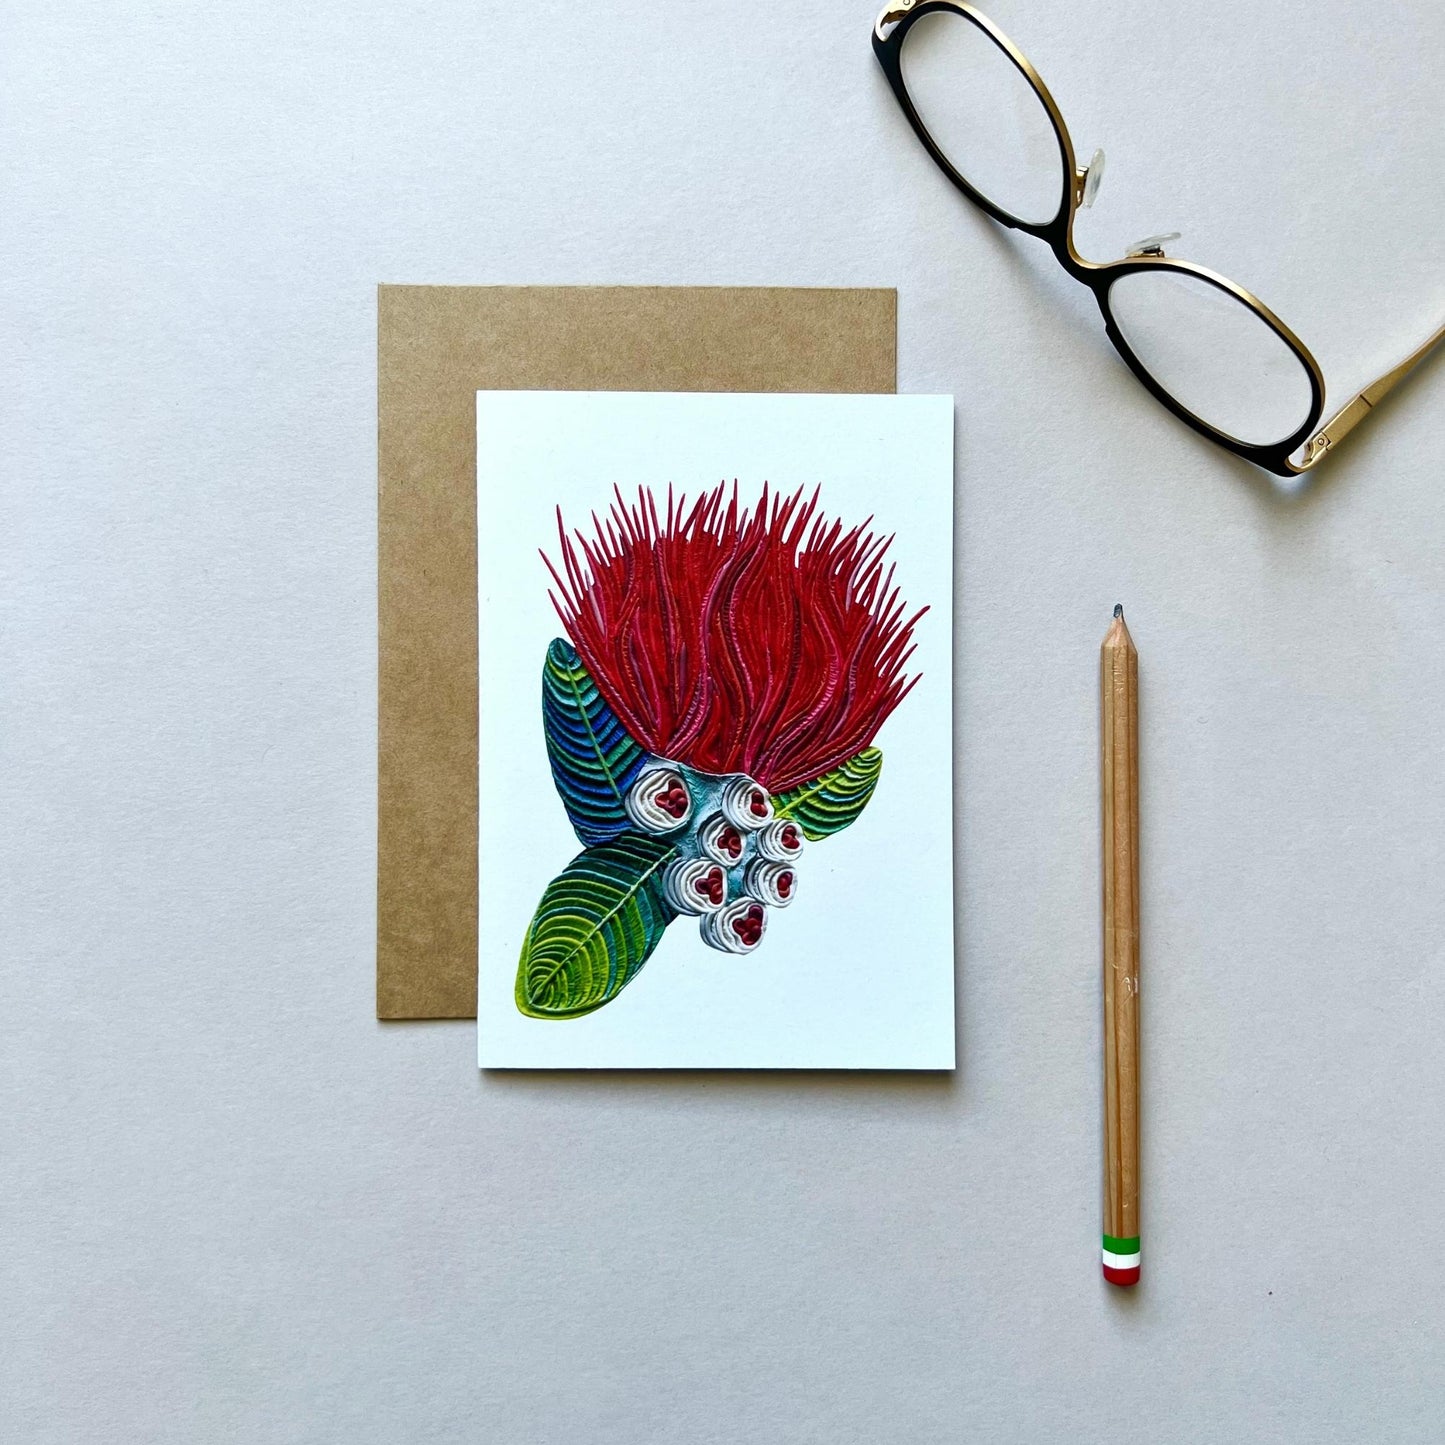 Set of 4 Pohutukawa Flowers Reusable Greeting Cards